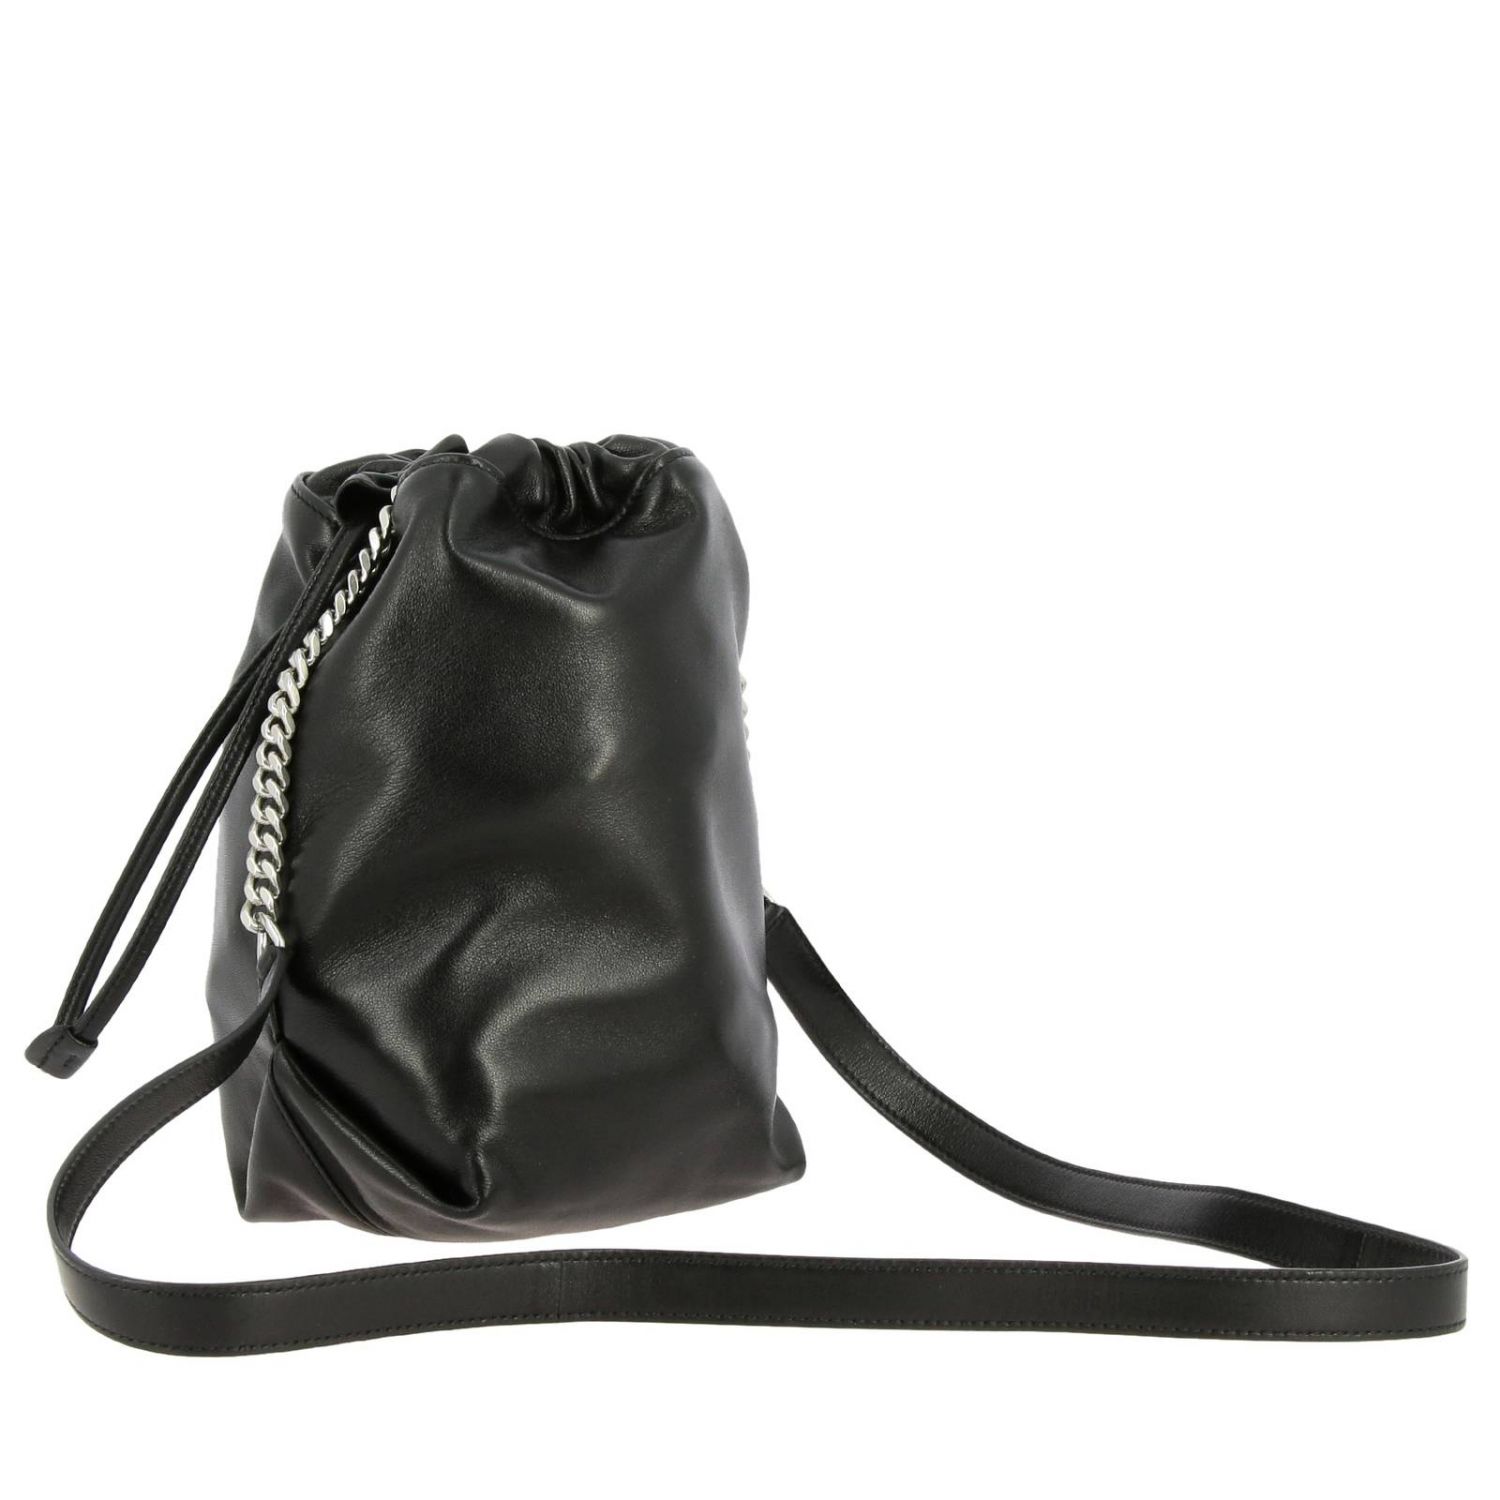 Saint Laurent Teddy Bucket Bag With Shoulder Strap By Mini Bag Saint Laurent Women Black Mini Bag Saint Laurent 583328 0yp0e Giglio Uk